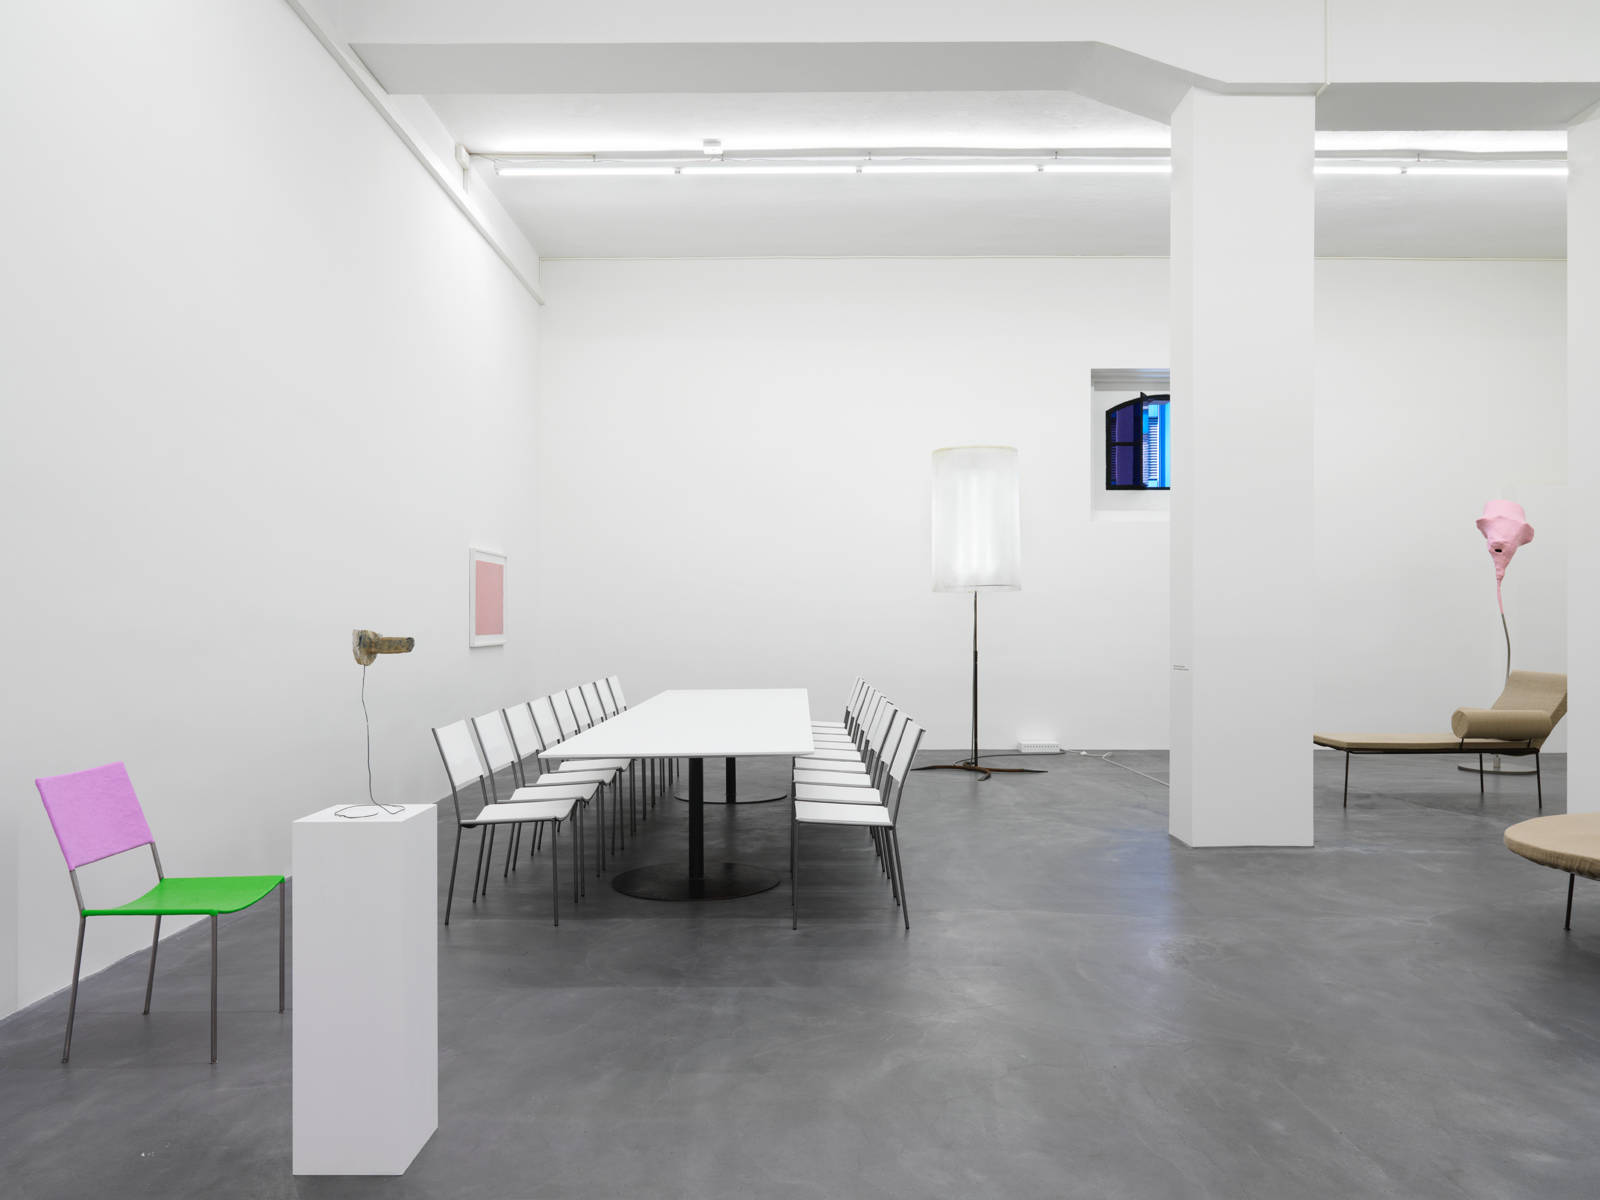 Franz West / "Möbelskulpturen", exhibition view, Galerie Eva Presenhuber, Zürich / 2015